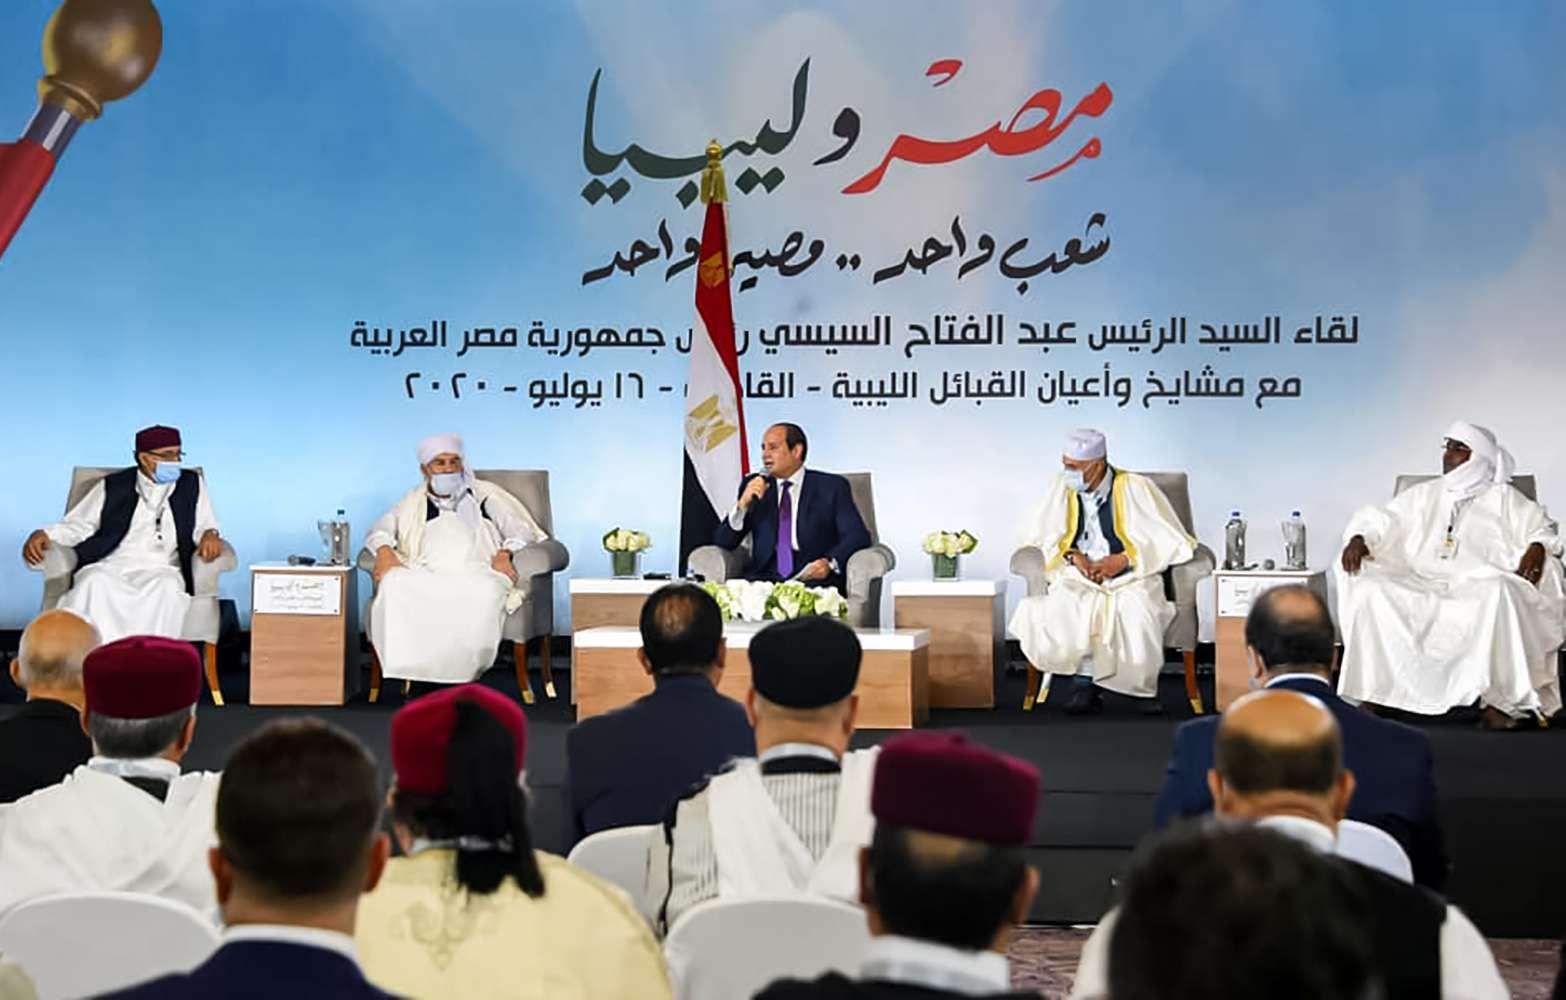 الرئيس المصري عبدالفتاح السيسي يجتمع مع زعماء القبائل الليبية